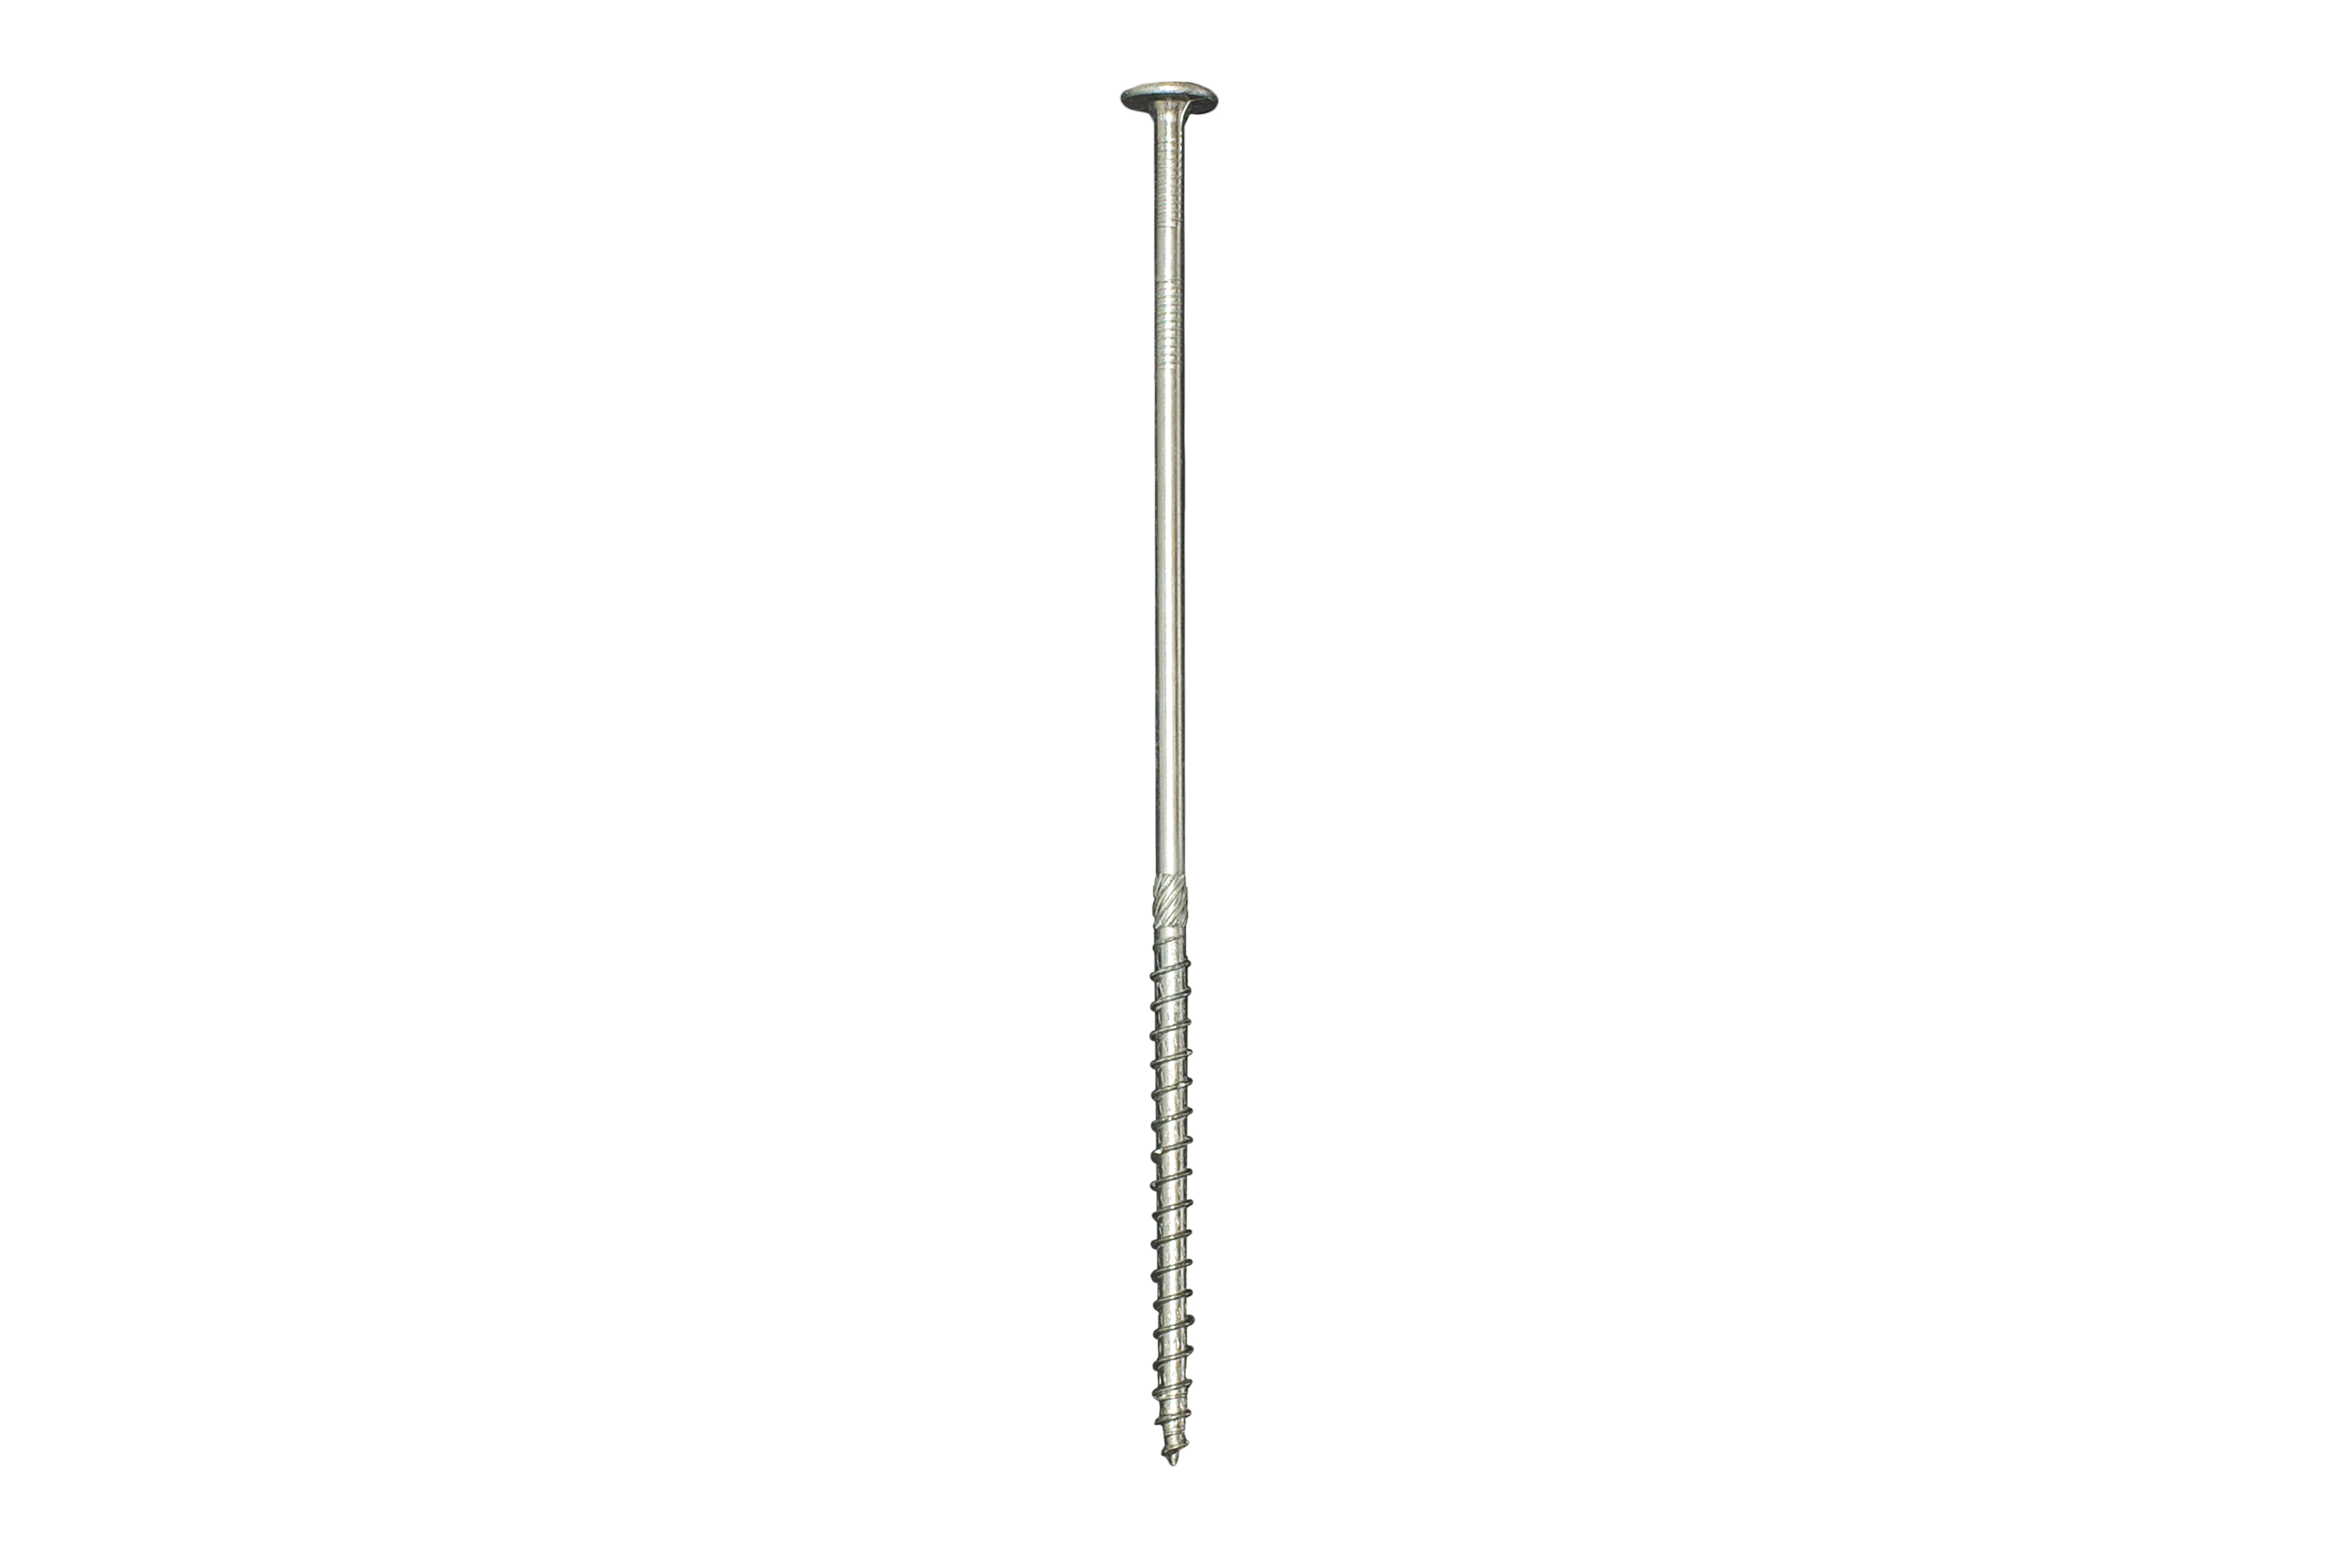 stainless steel screws pricelist